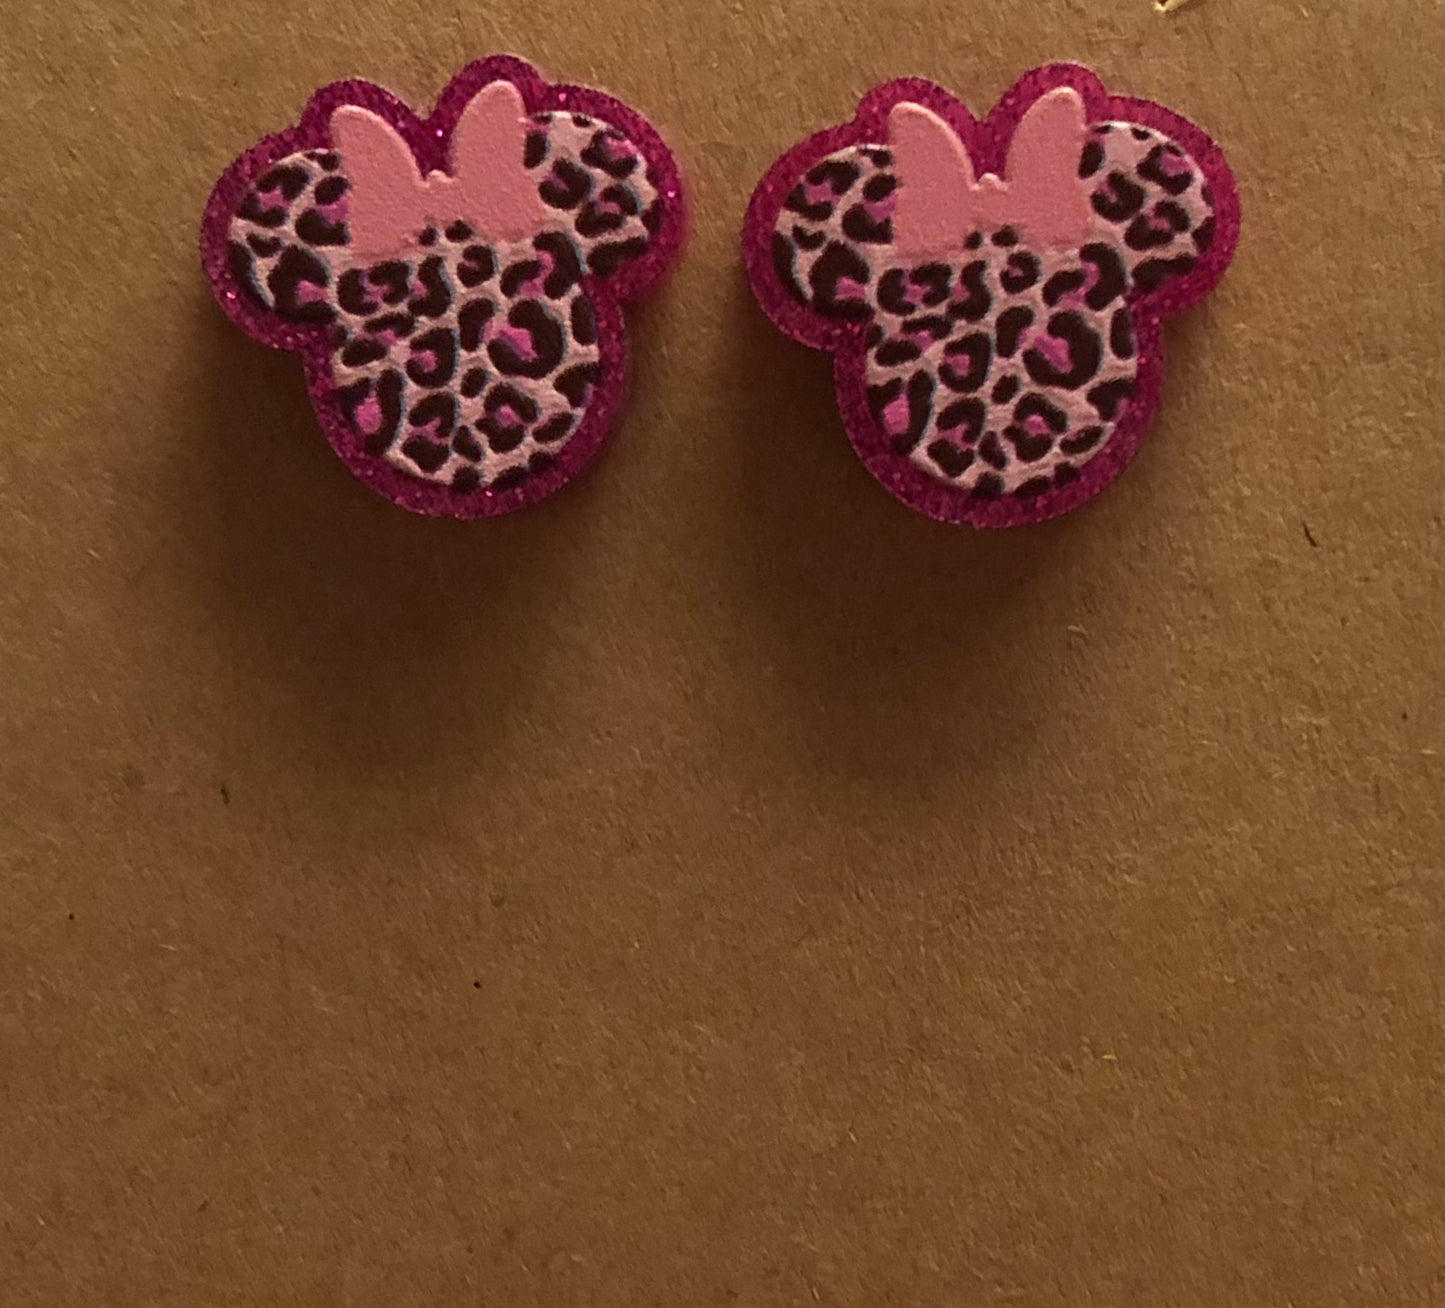 Leopard print Minnie Mouse head y2k stud earrings